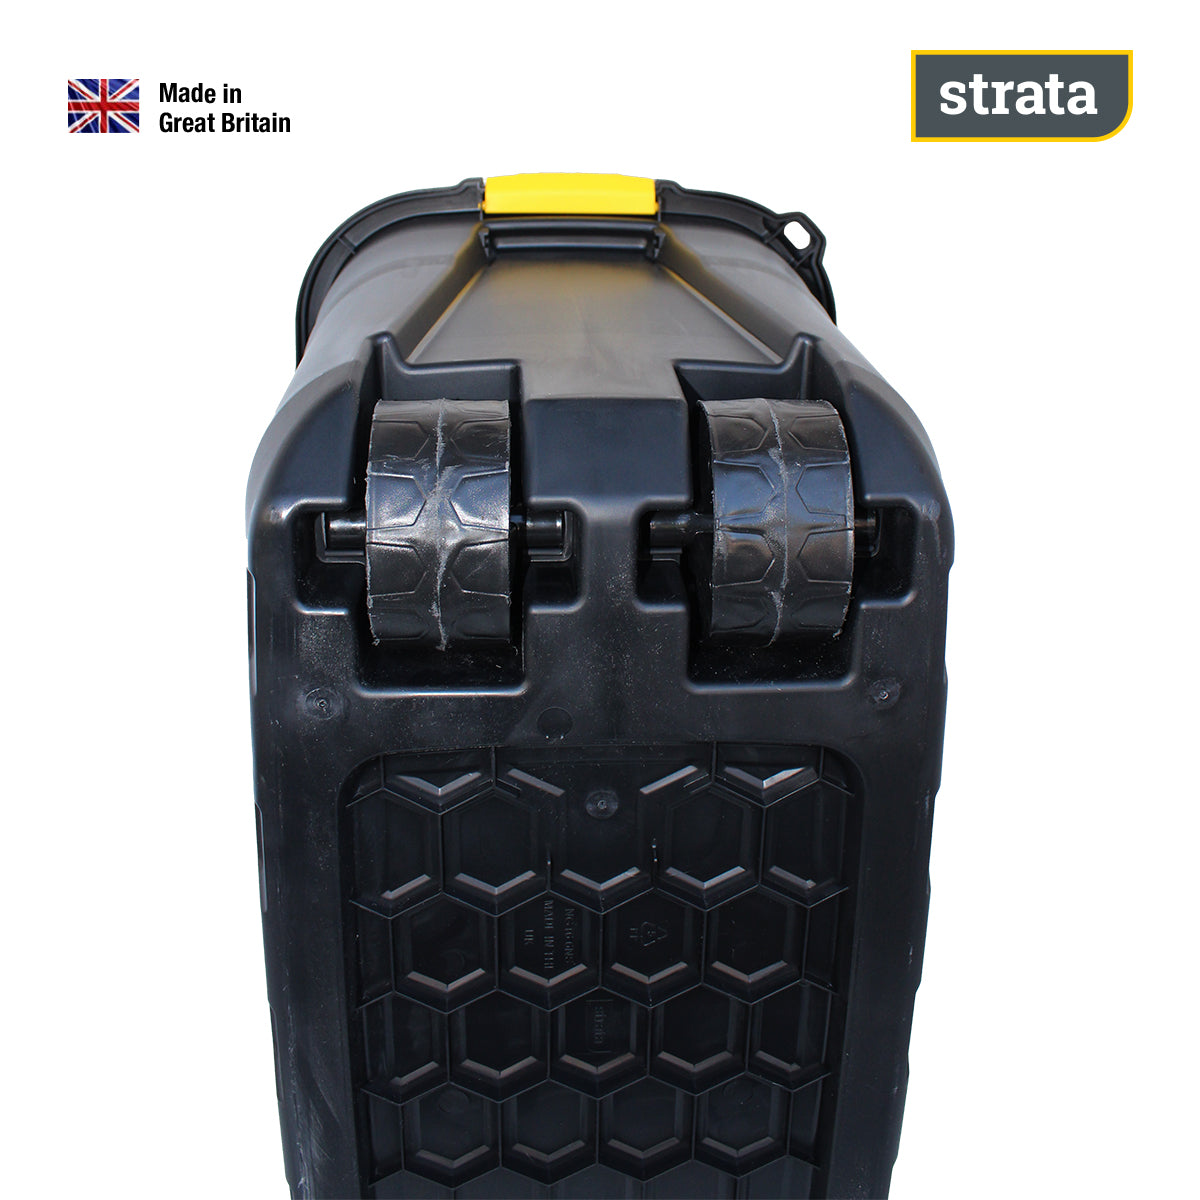 Contenedor De Plastico110 litros y 470 kilos de carga con ruedas STRATA